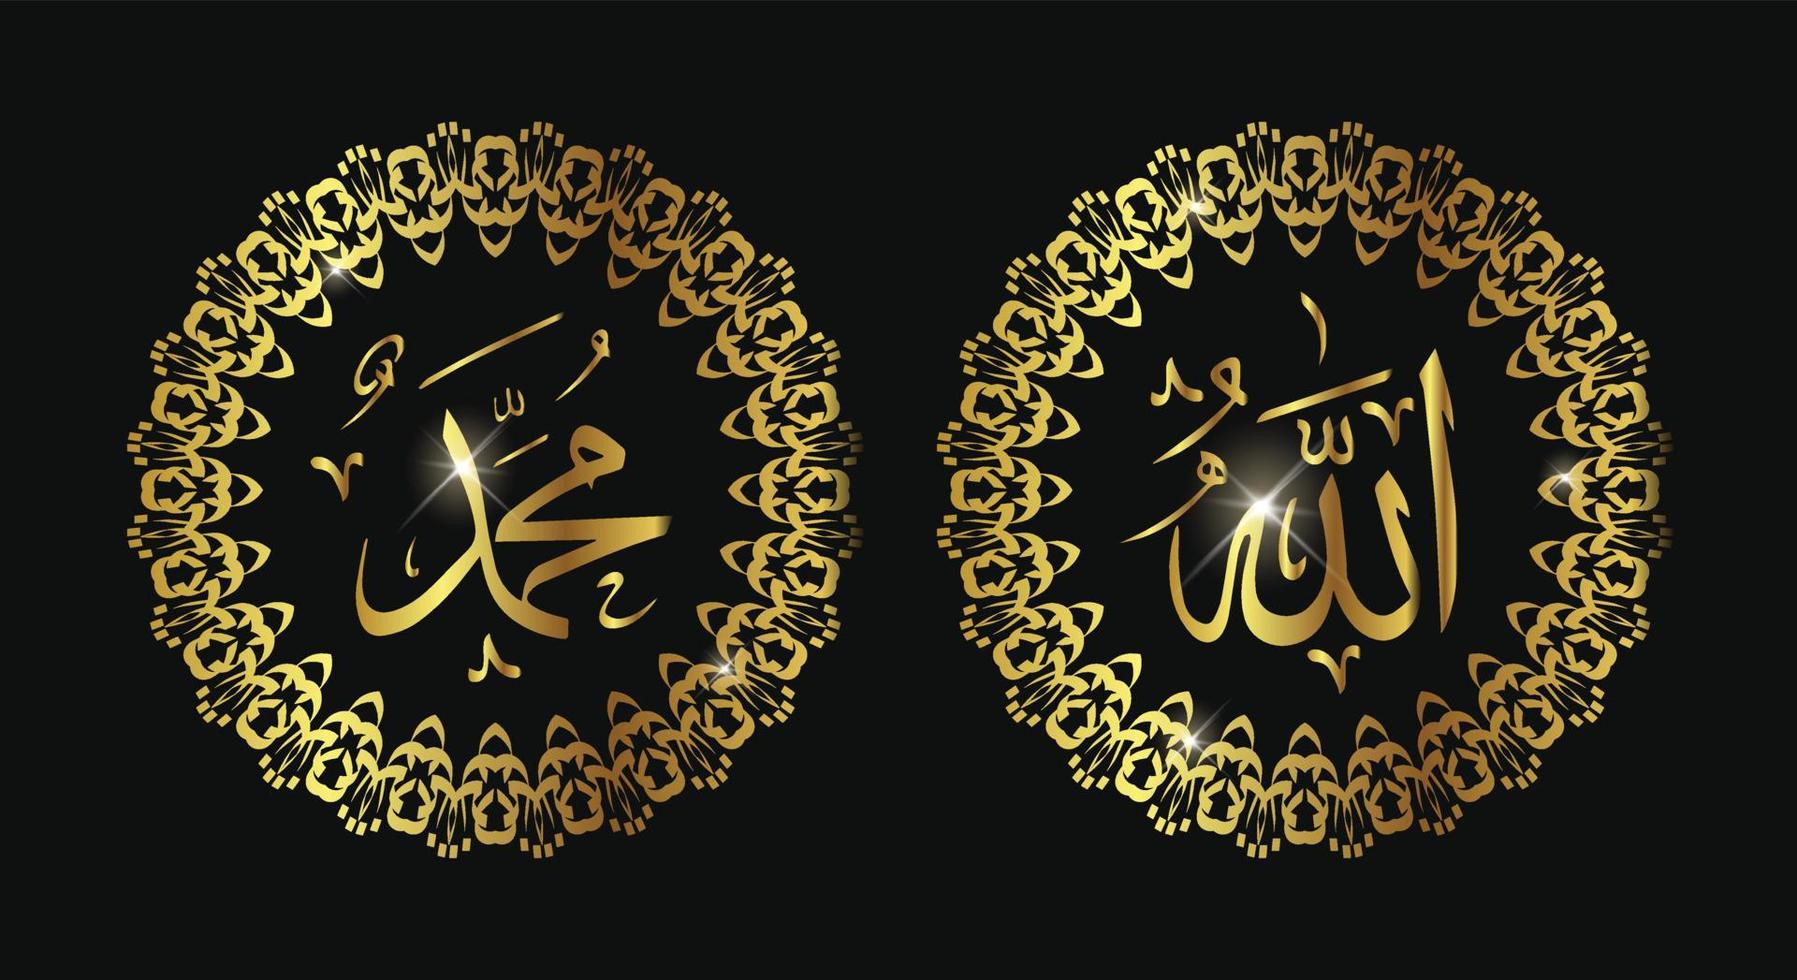 allah muhammad naam van allah muhammad, allah muhammad Arabische islamitische kalligrafie kunst, geïsoleerd op een donkere achtergrond. vector